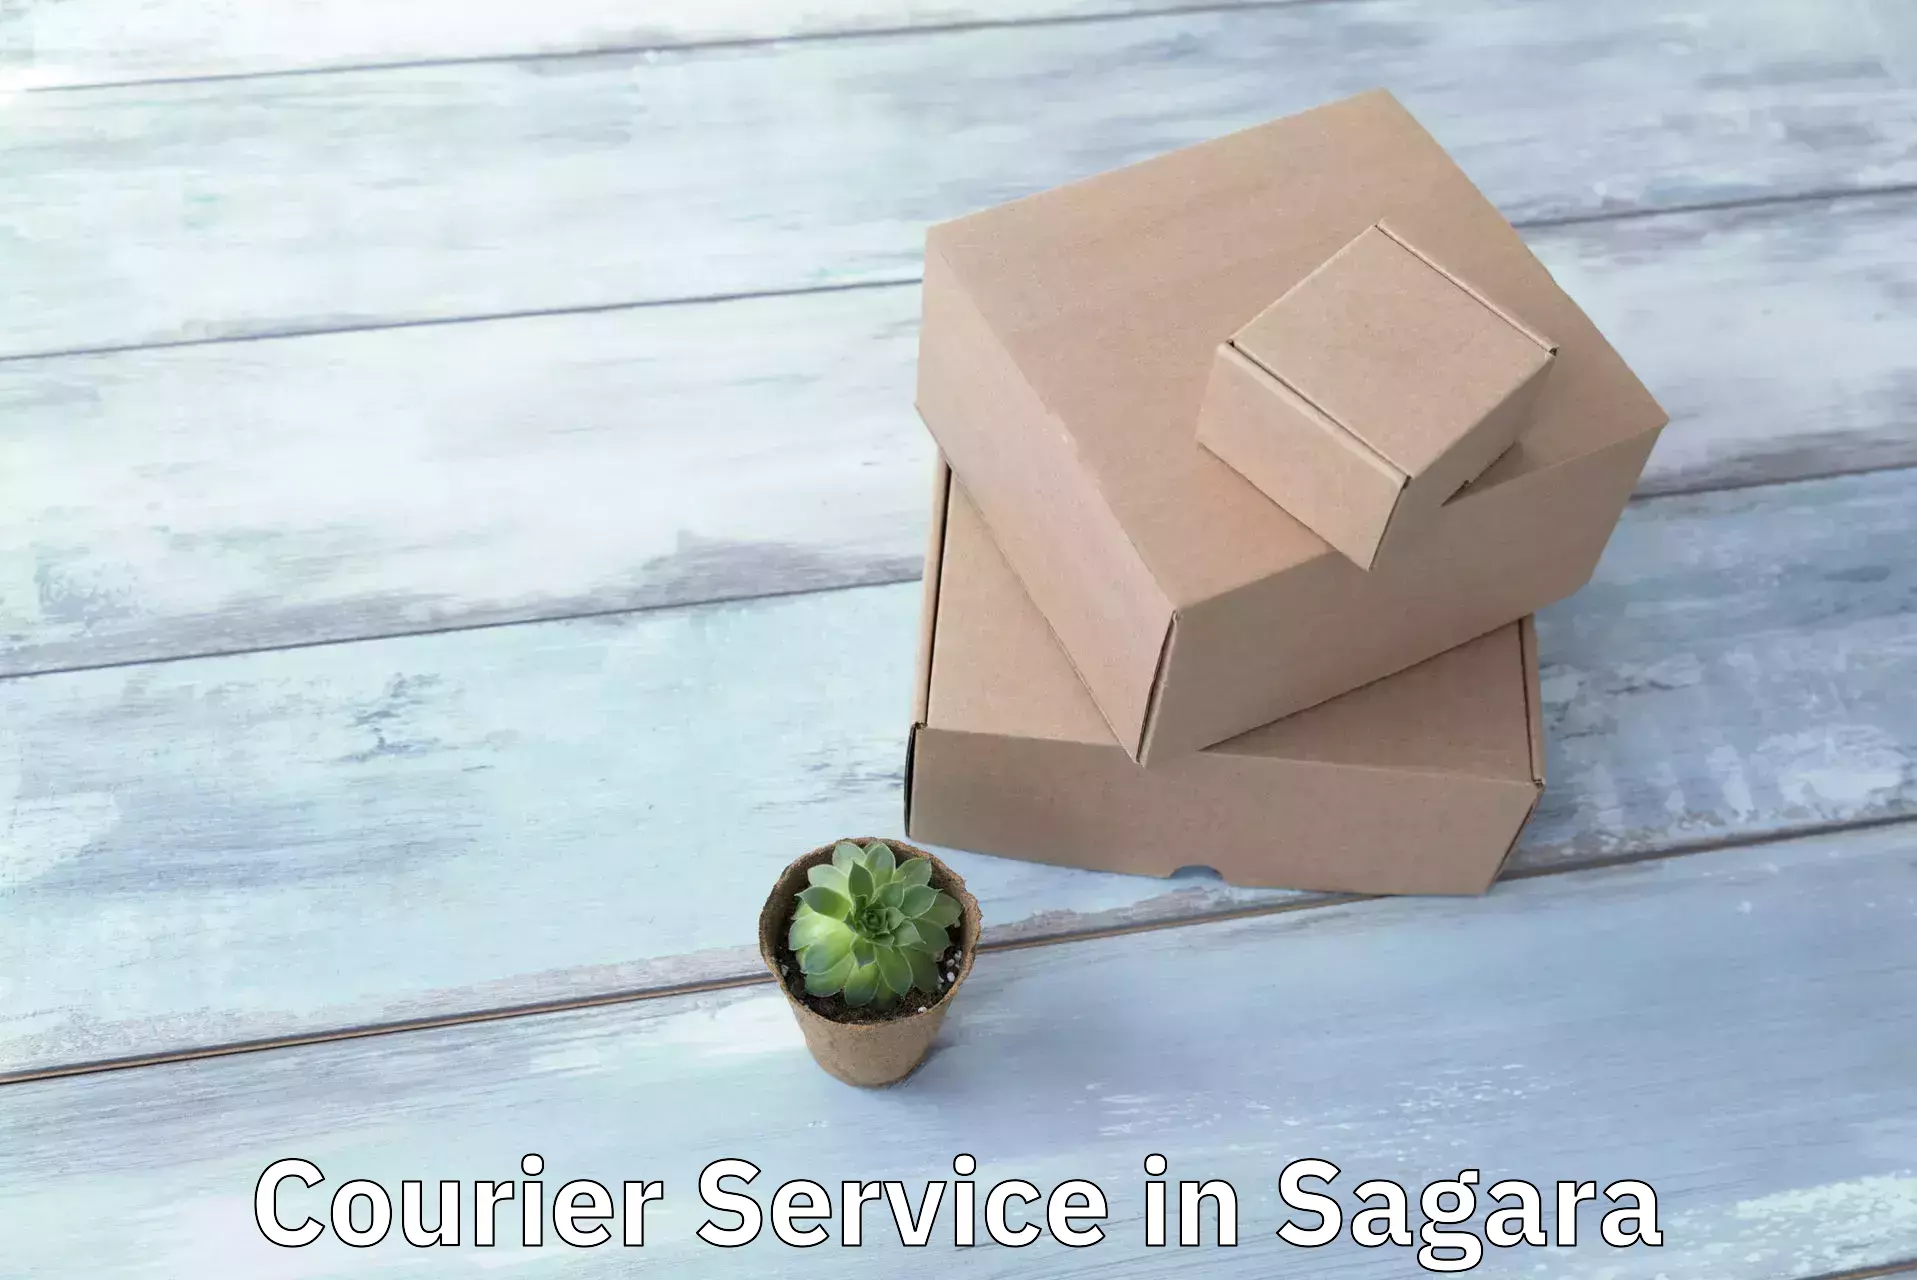 Efficient freight service in Sagara